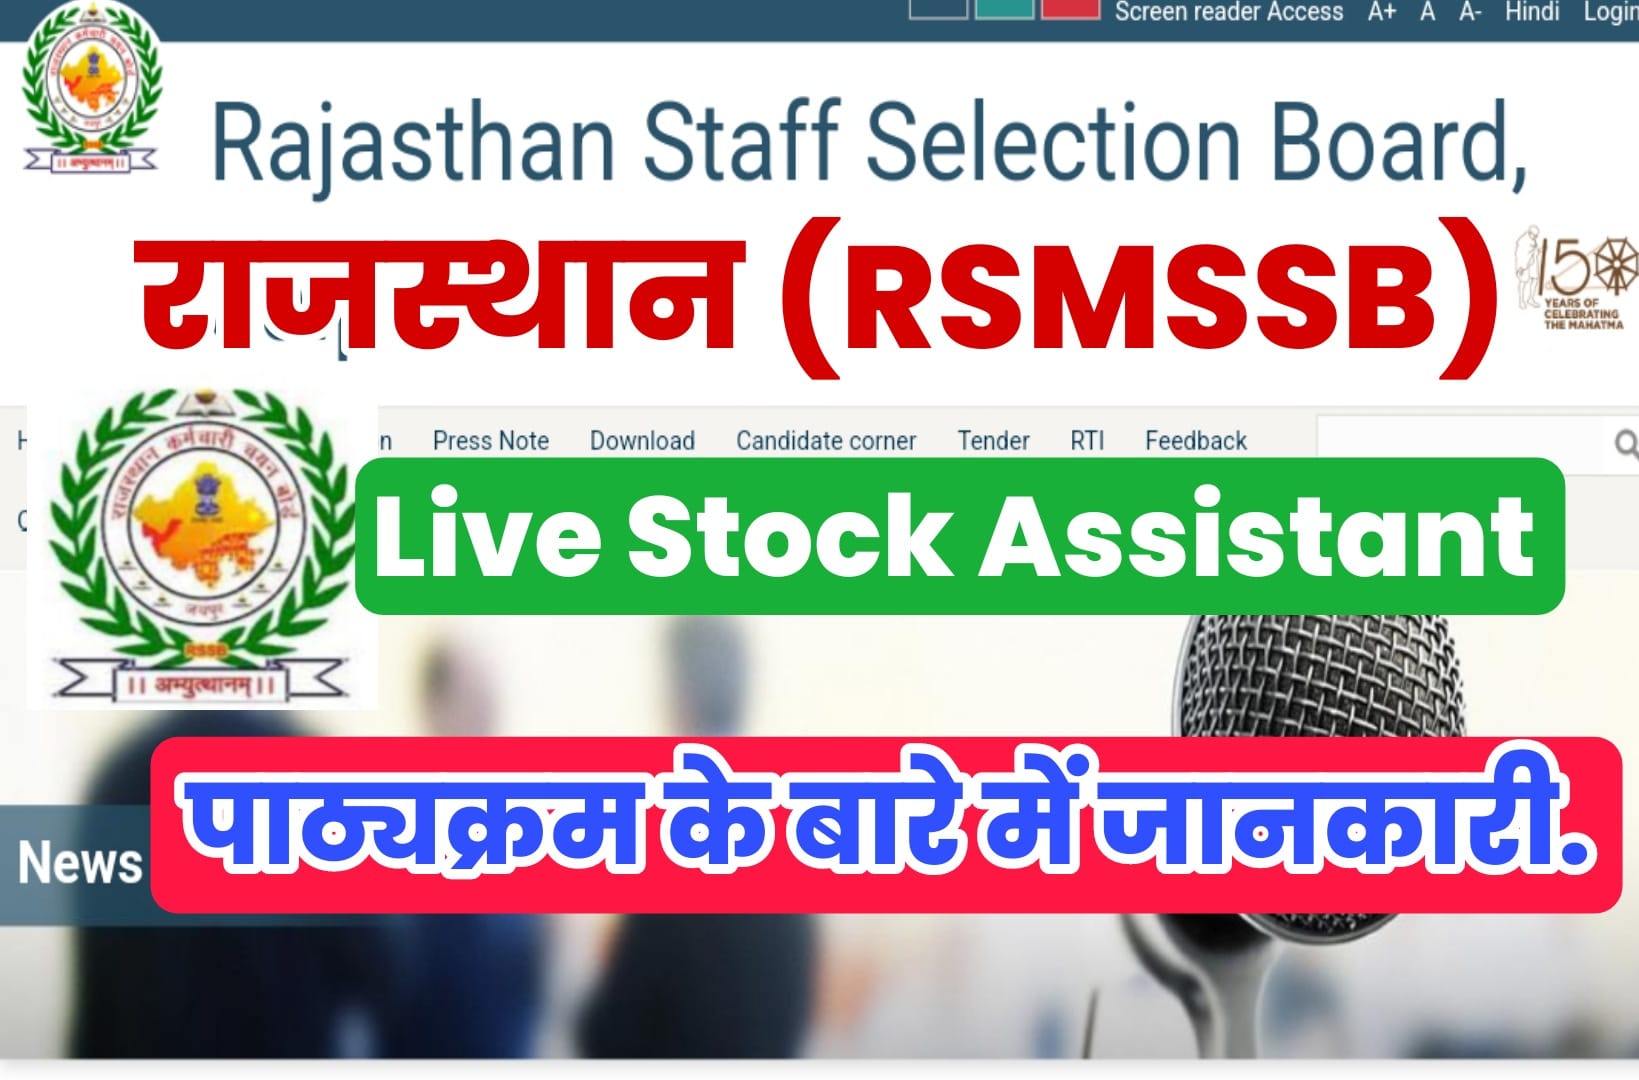 RSMSSB Livestock Assistant Syllabus 2022 In Hindi | राजस्थान पशुधन सहायक सिलेबस हिंदी में